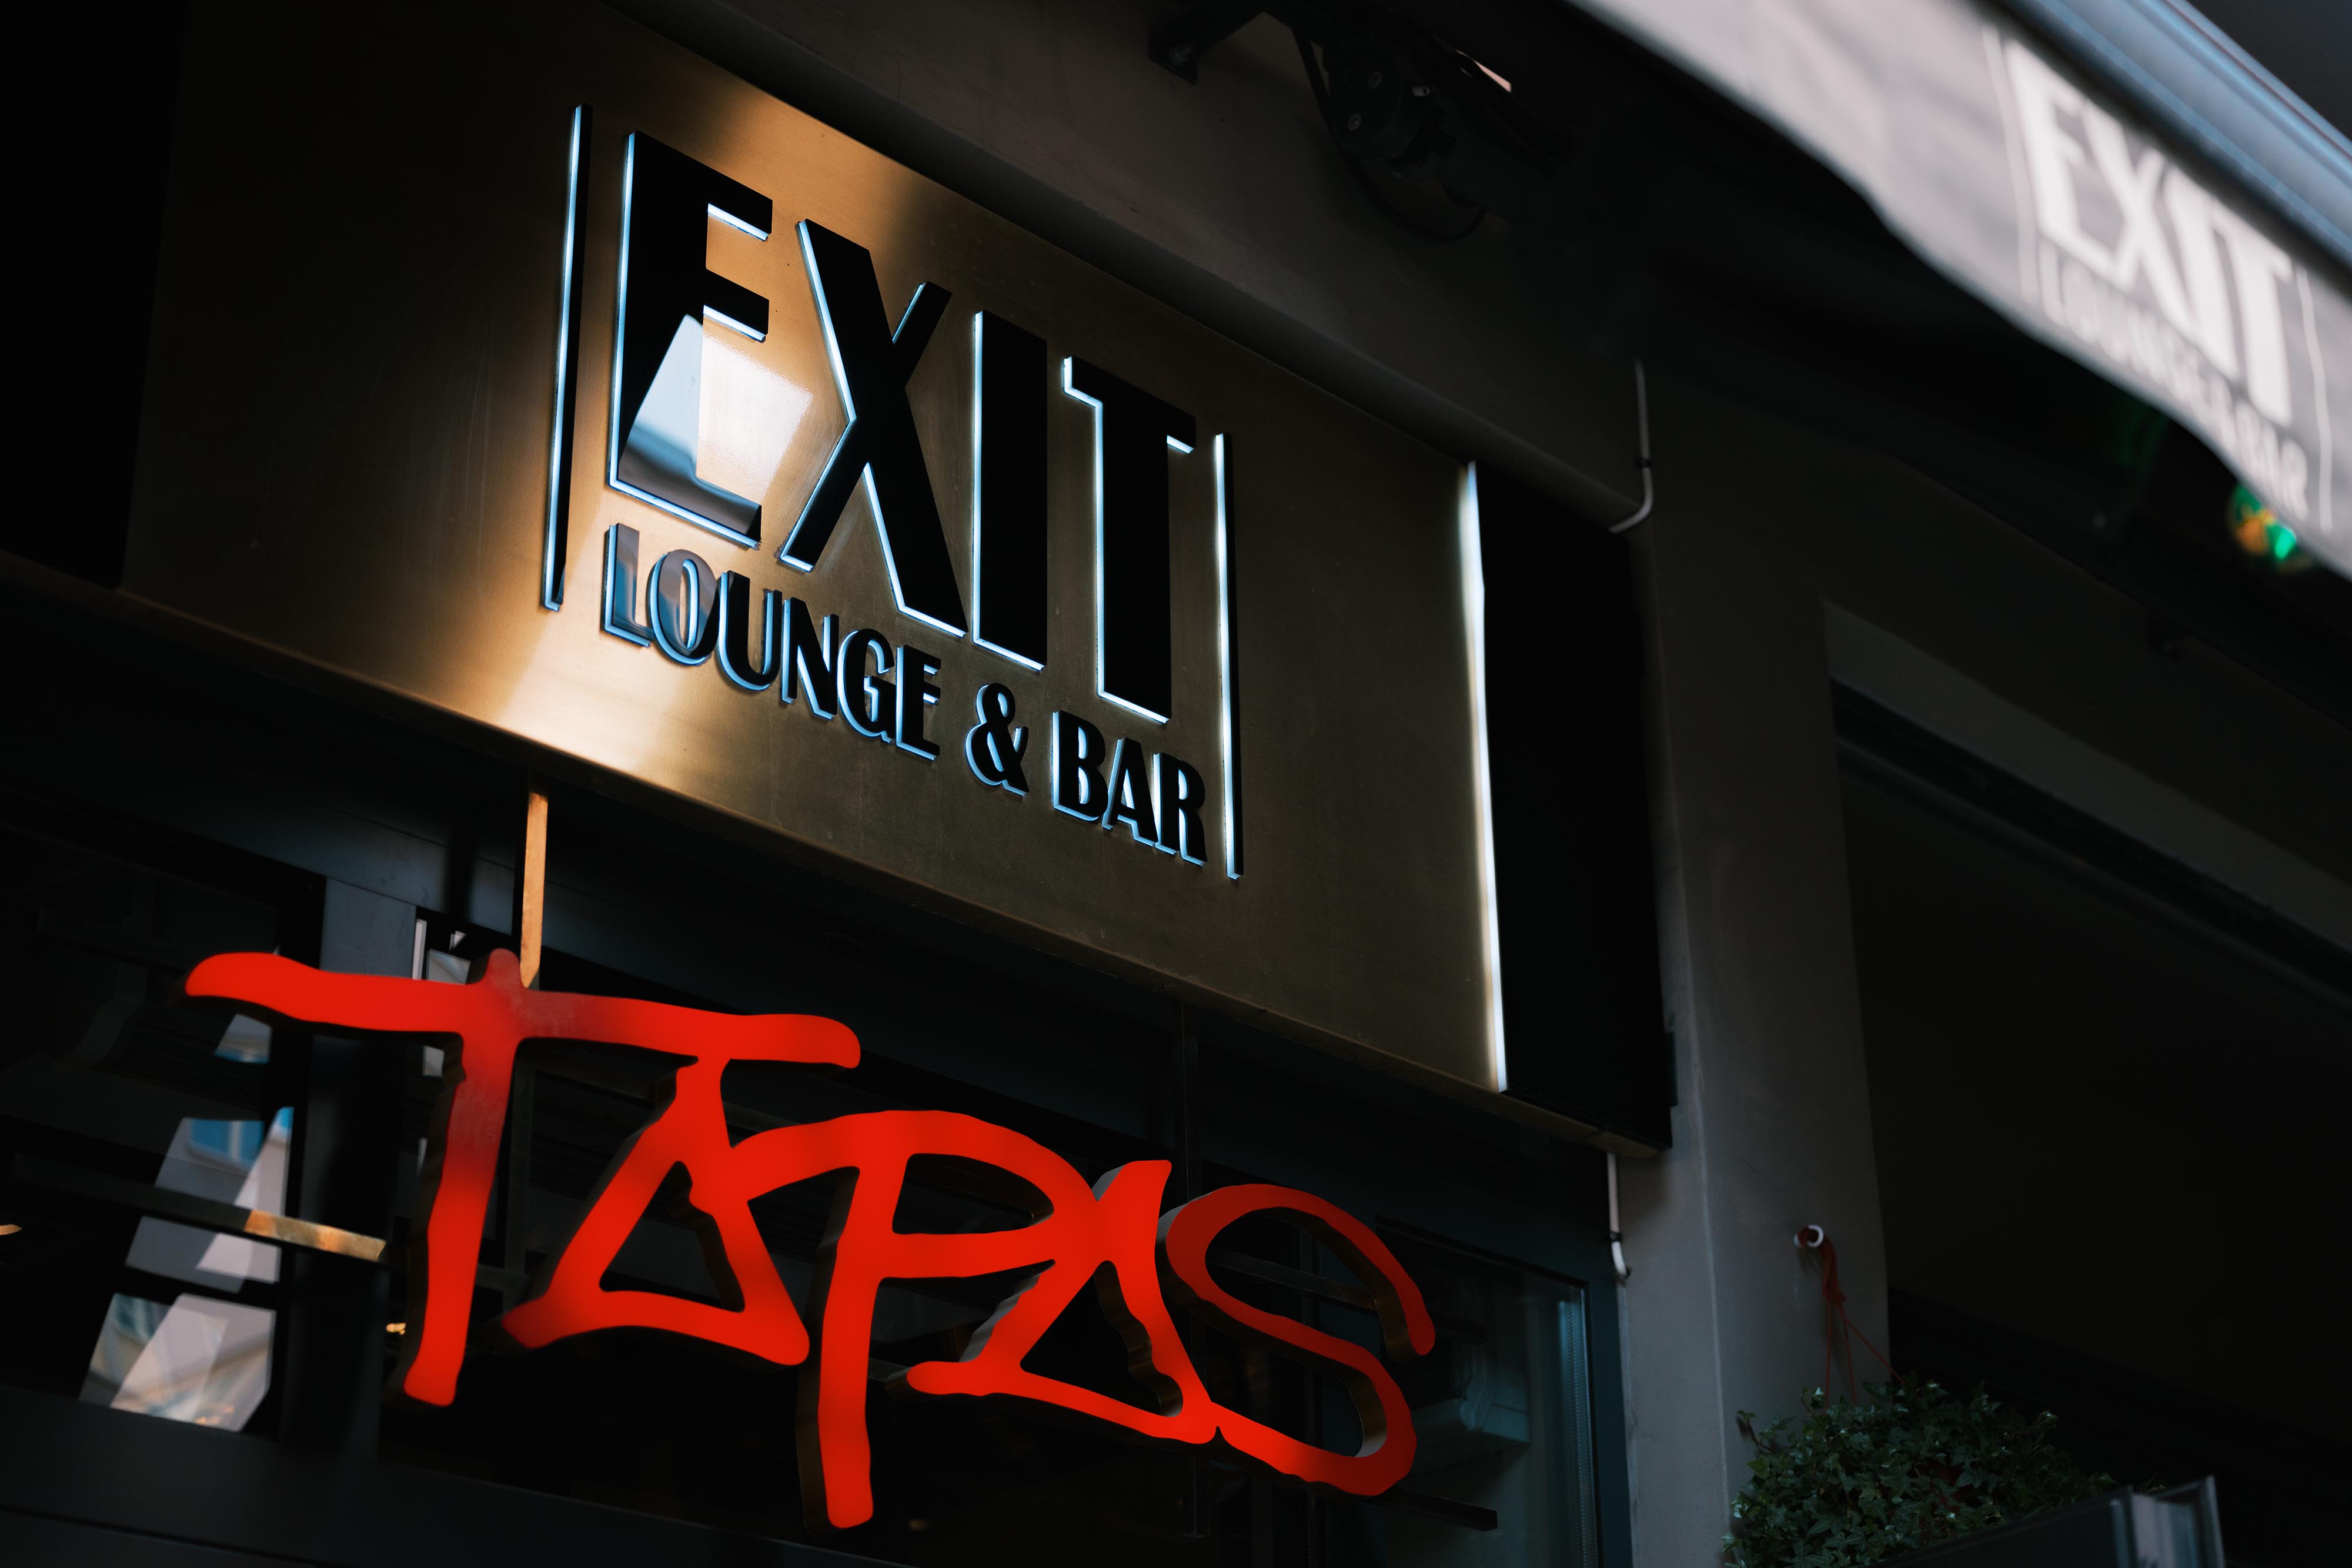 Exit Lounge & Bar Tapas vid Medborgarplatsen på Södermalm